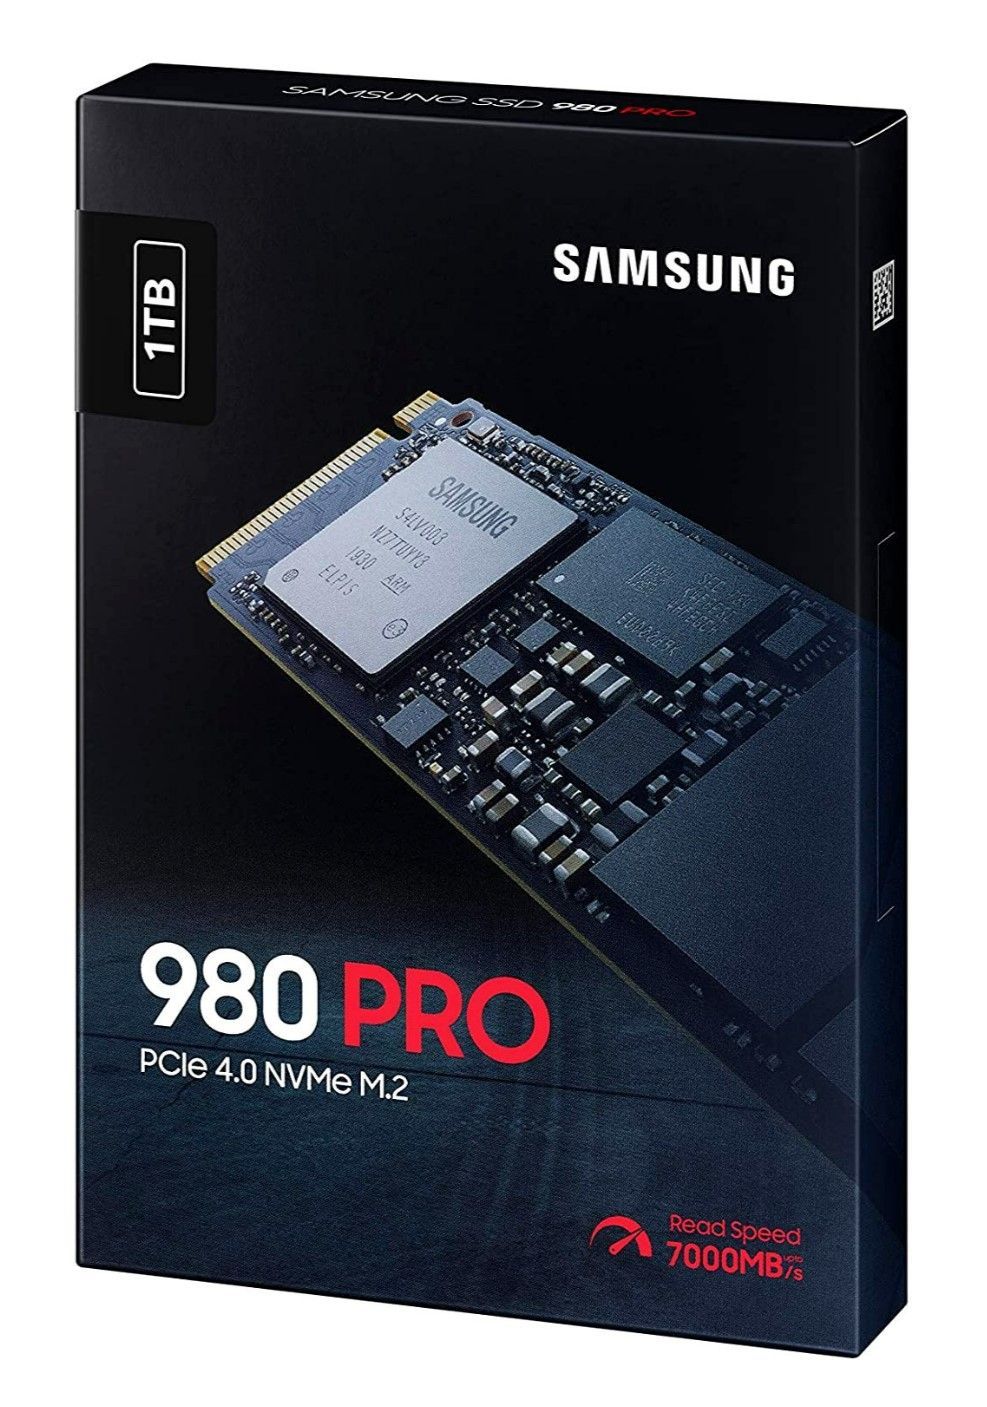 1000 ГБ SSD M.2 накопитель Samsung 980 PRO [MZ-V8P1T0BW]